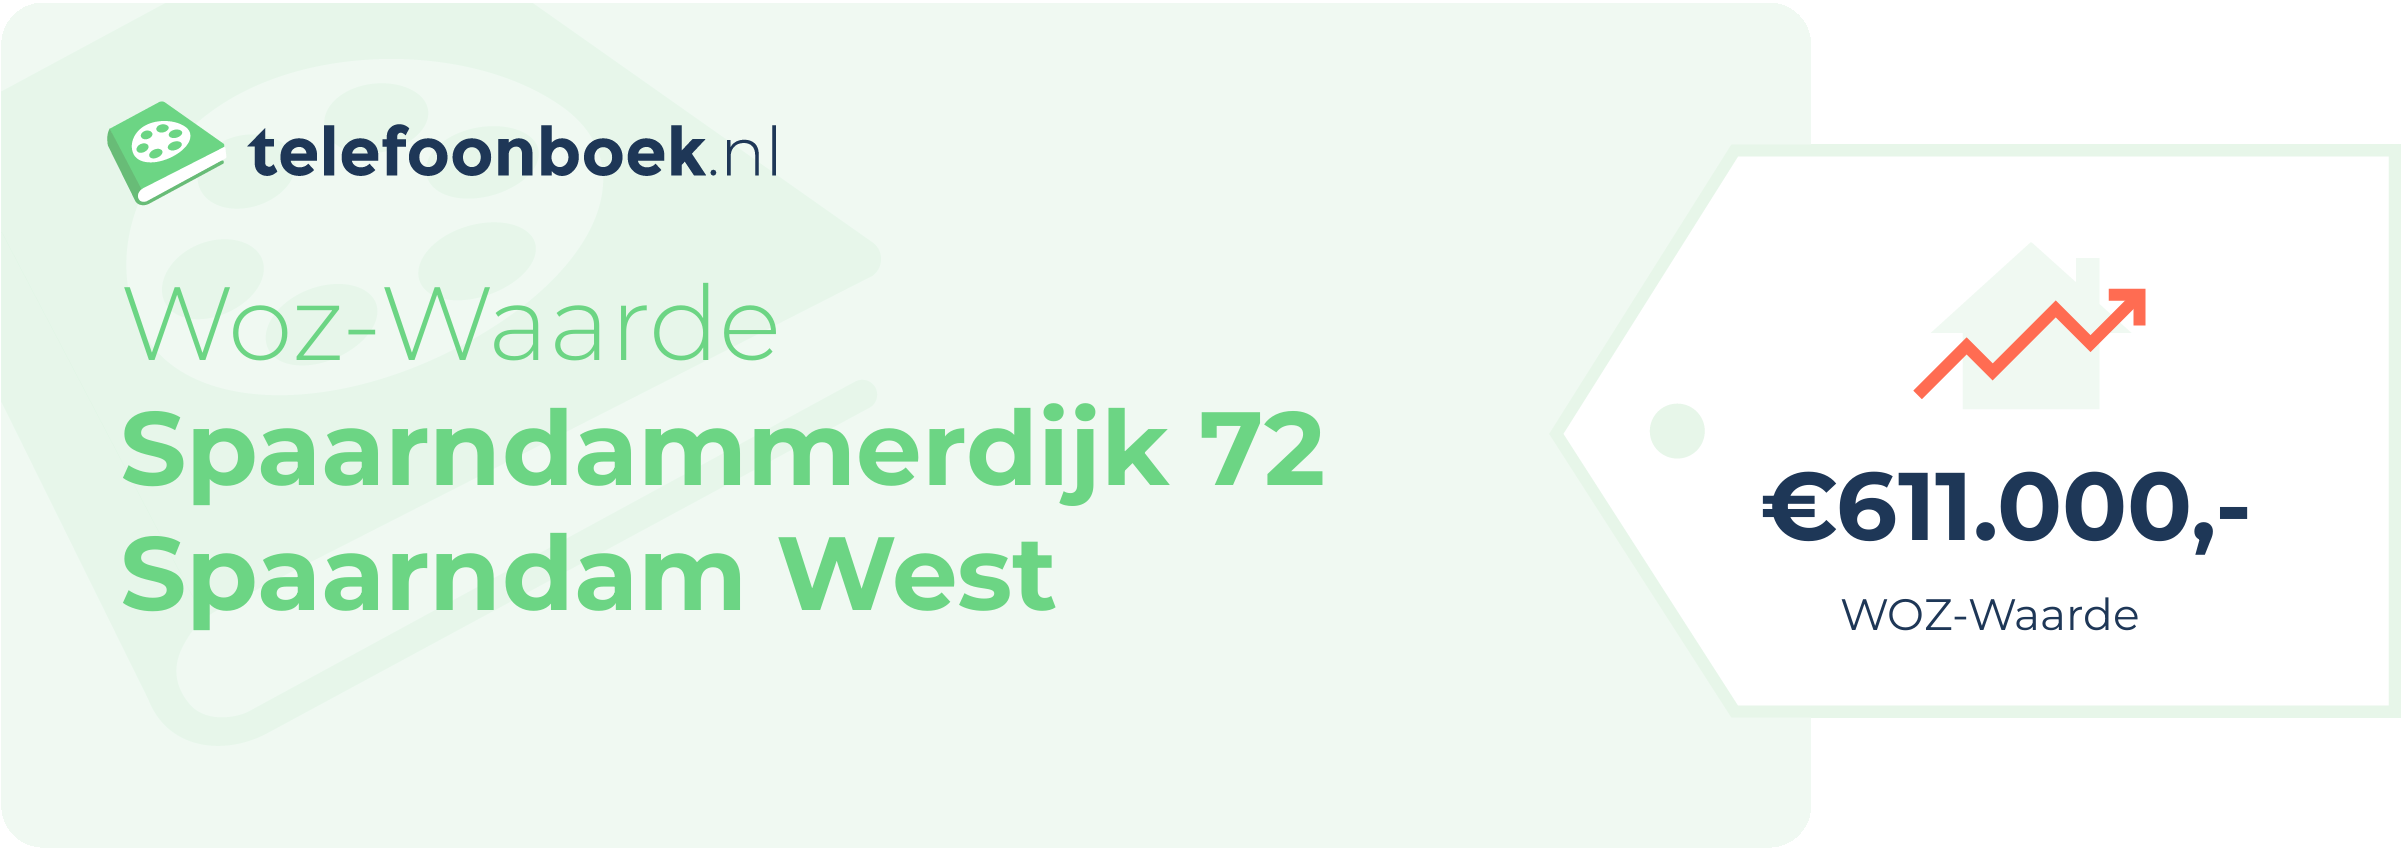 WOZ-waarde Spaarndammerdijk 72 Spaarndam West